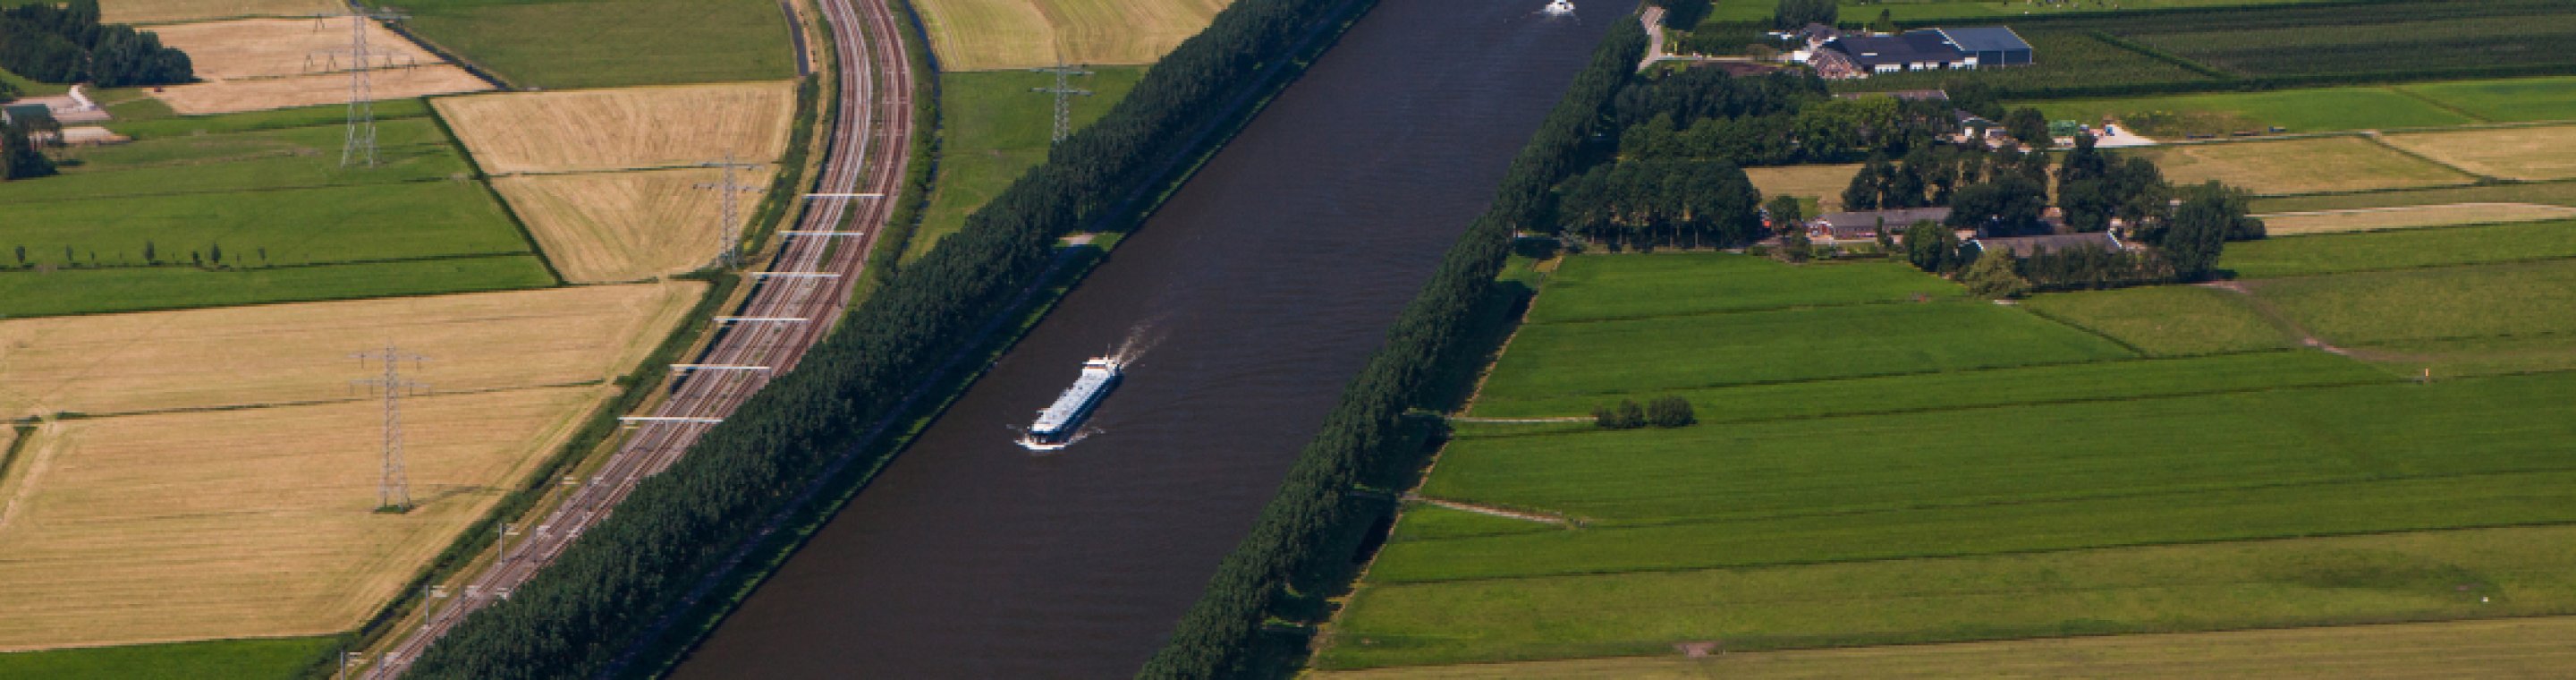 Het Amsterdam-Rijnkanaal, stromend door het landschap rondom Breukelen. 